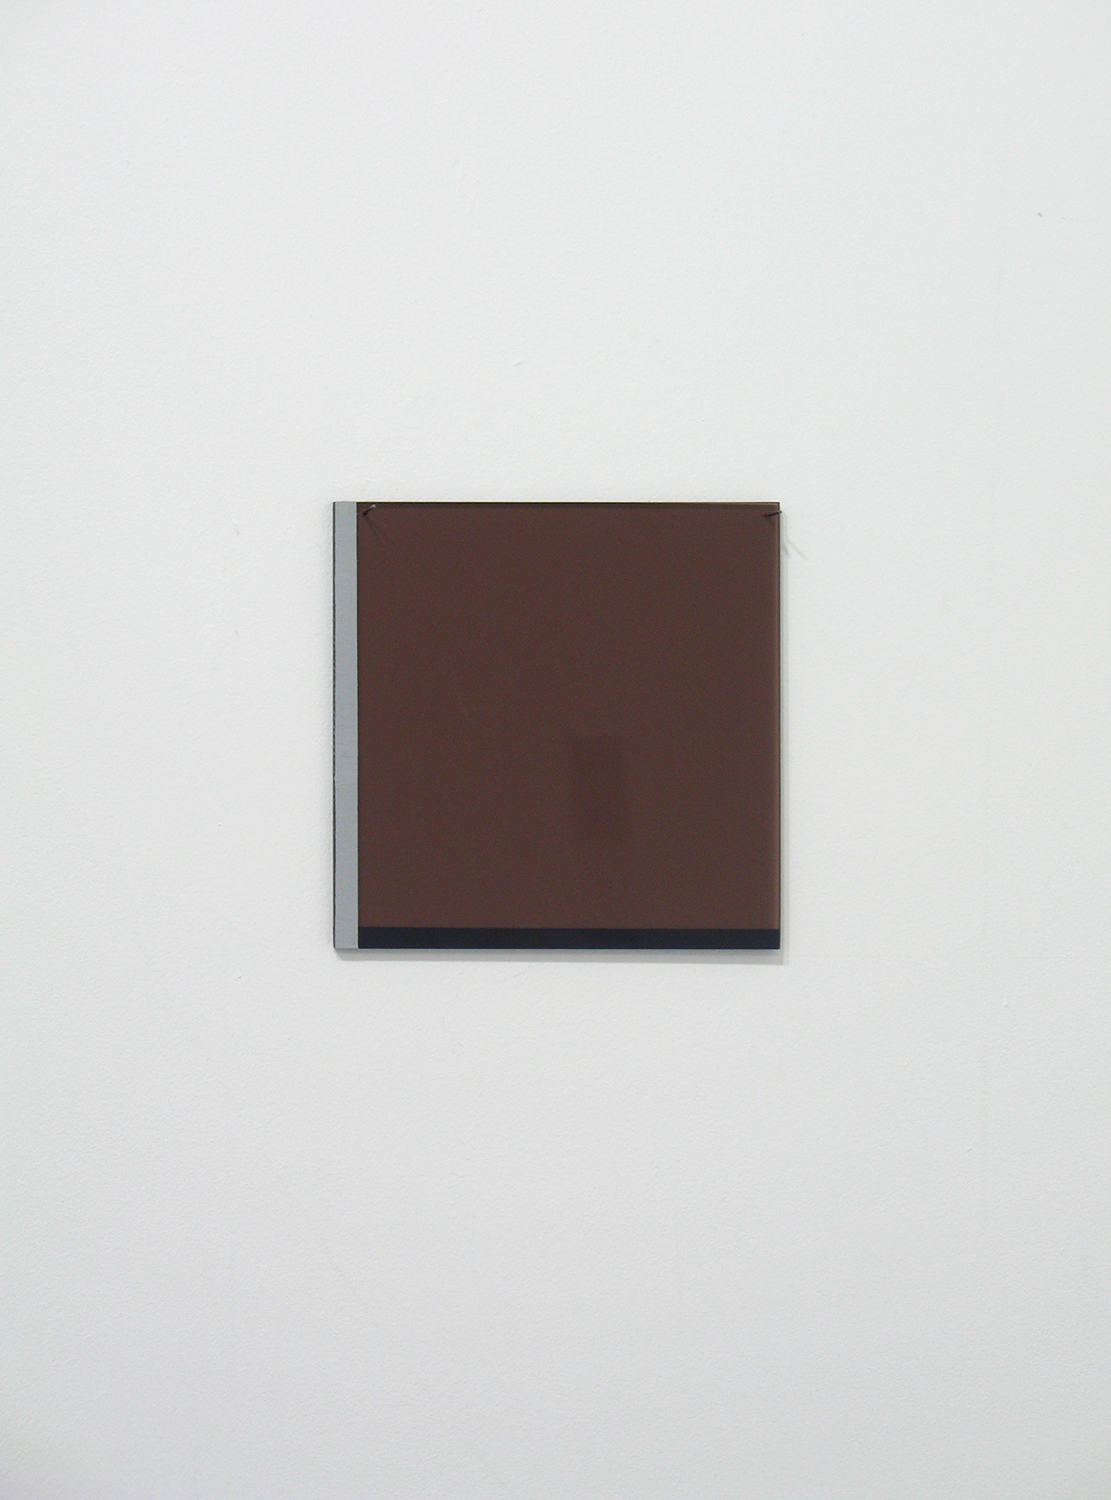 堀尾昭子 Akiko Horio<br>茶色<br>アクリル、アクリル板, 12.5 x 12.5 cm<br>2012